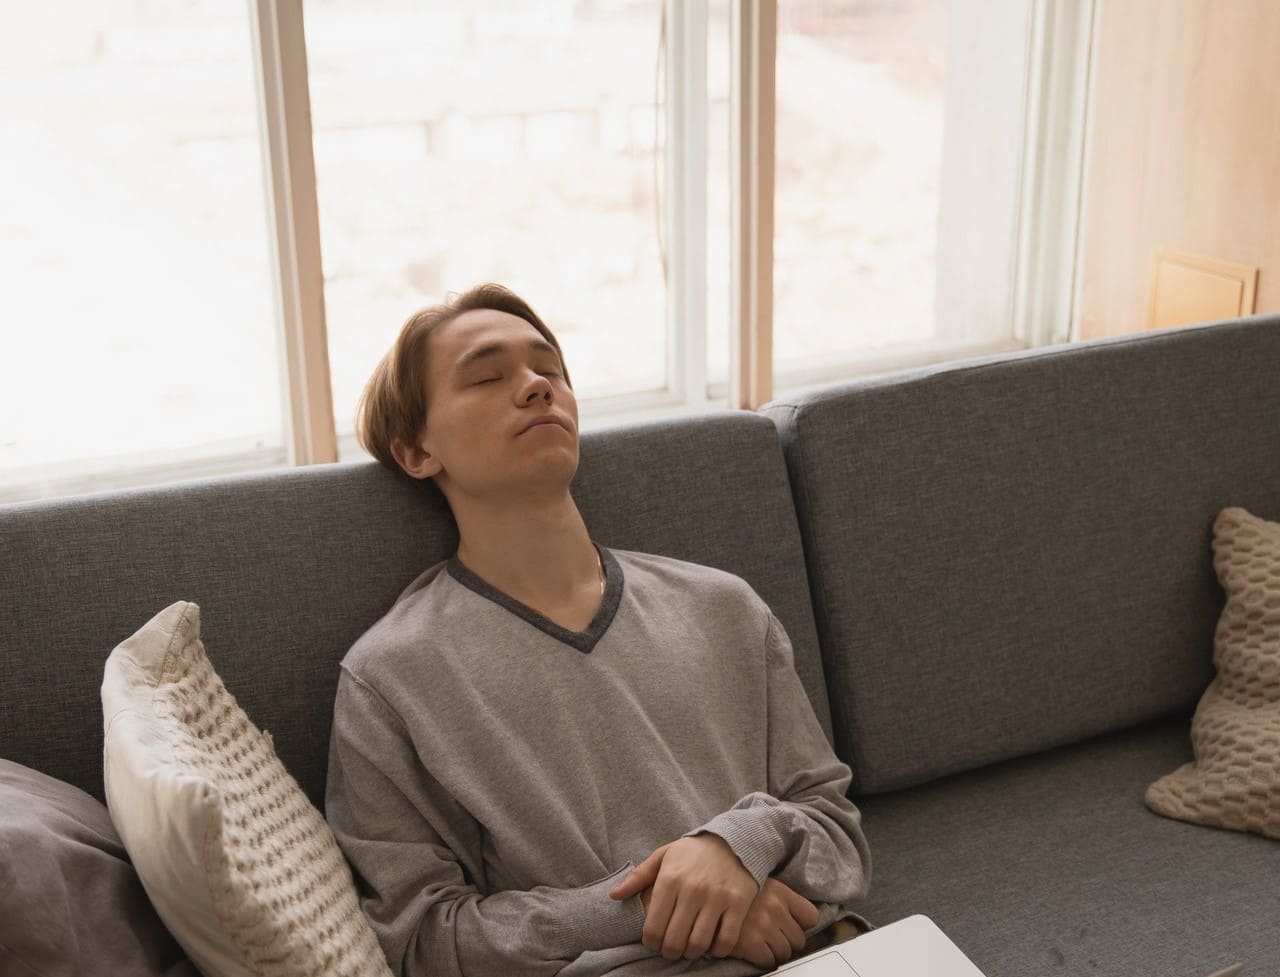 Titelbild: Junger Mann auf heimischem Sofa fühlt "Ich will alleine sein und meine Ruhe haben"